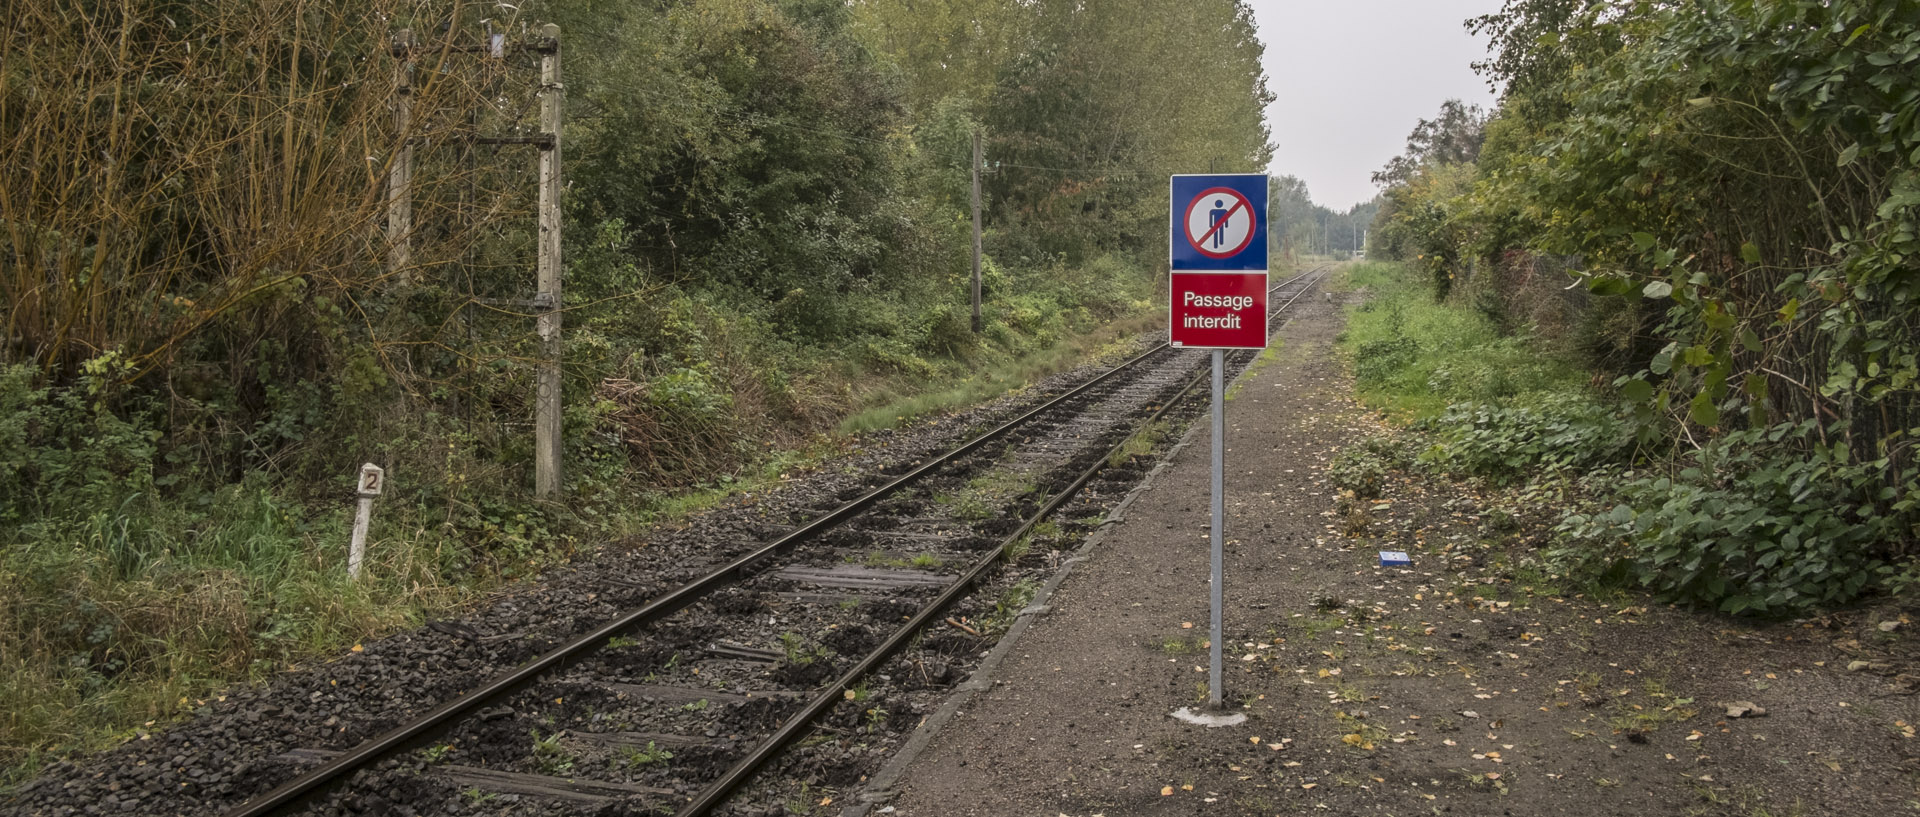 Jeudi 15 octobre 2015, 16:50, halte SNCF, Marquette lez Lille